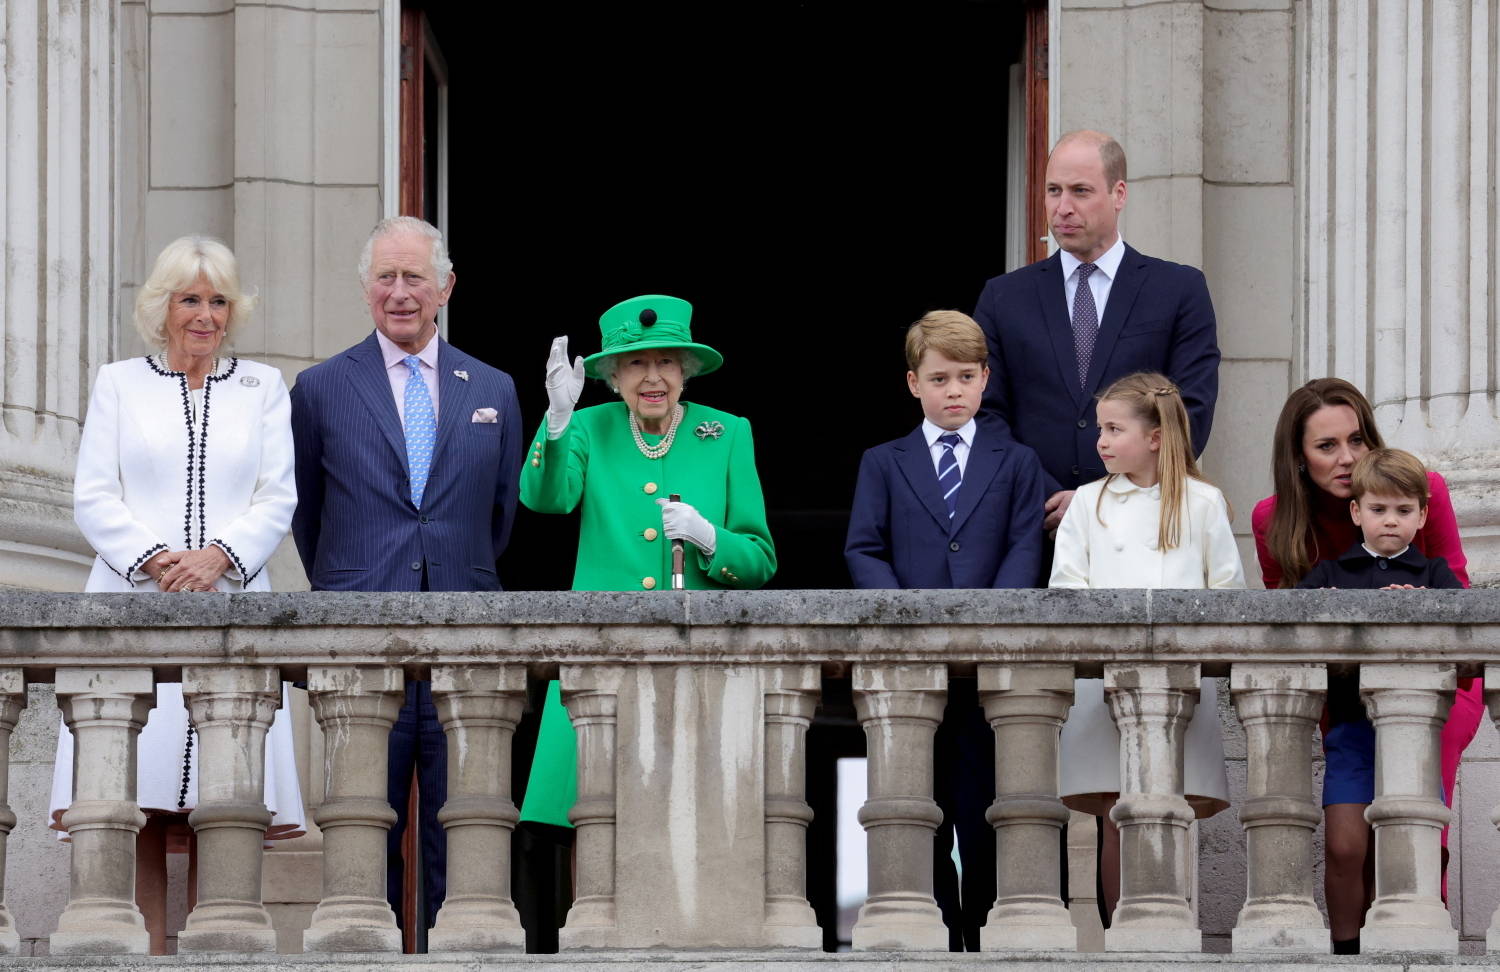 Rainha Elizabeth tirou uma foto com duas pessoinhas especiais, diz site -  Estrelando